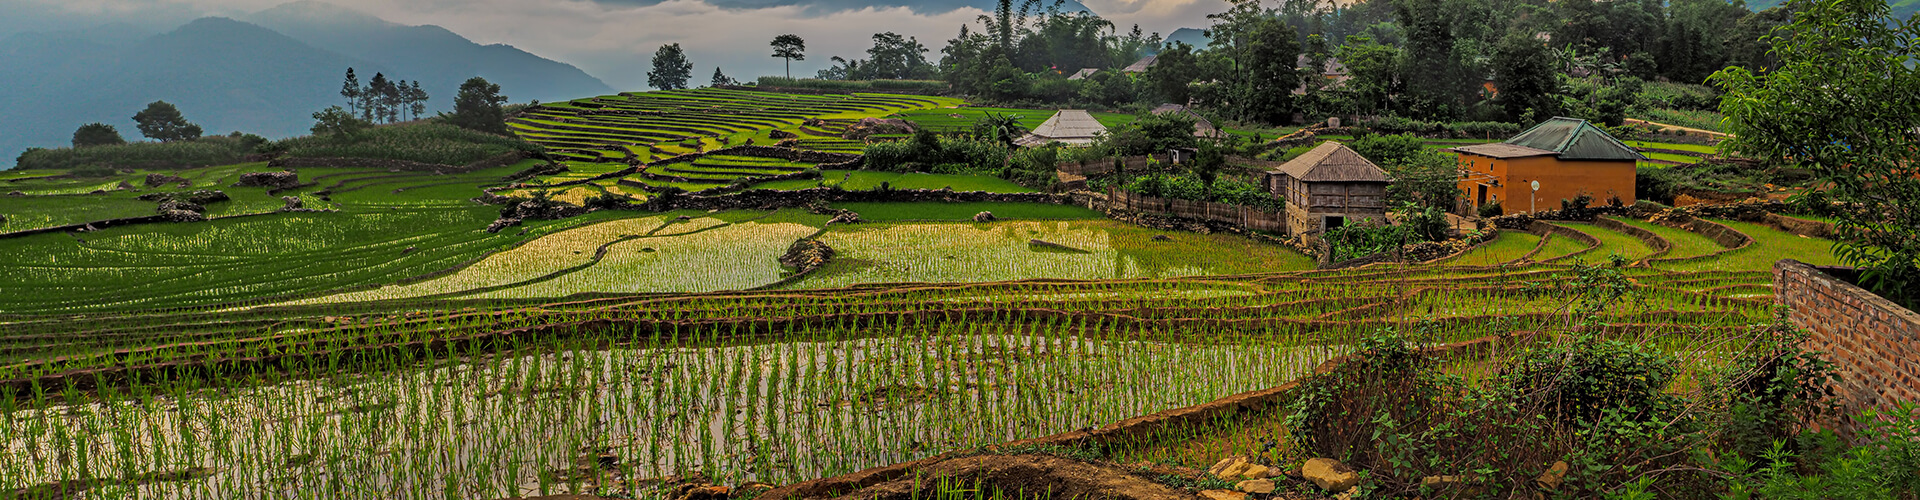 Vietnam farm